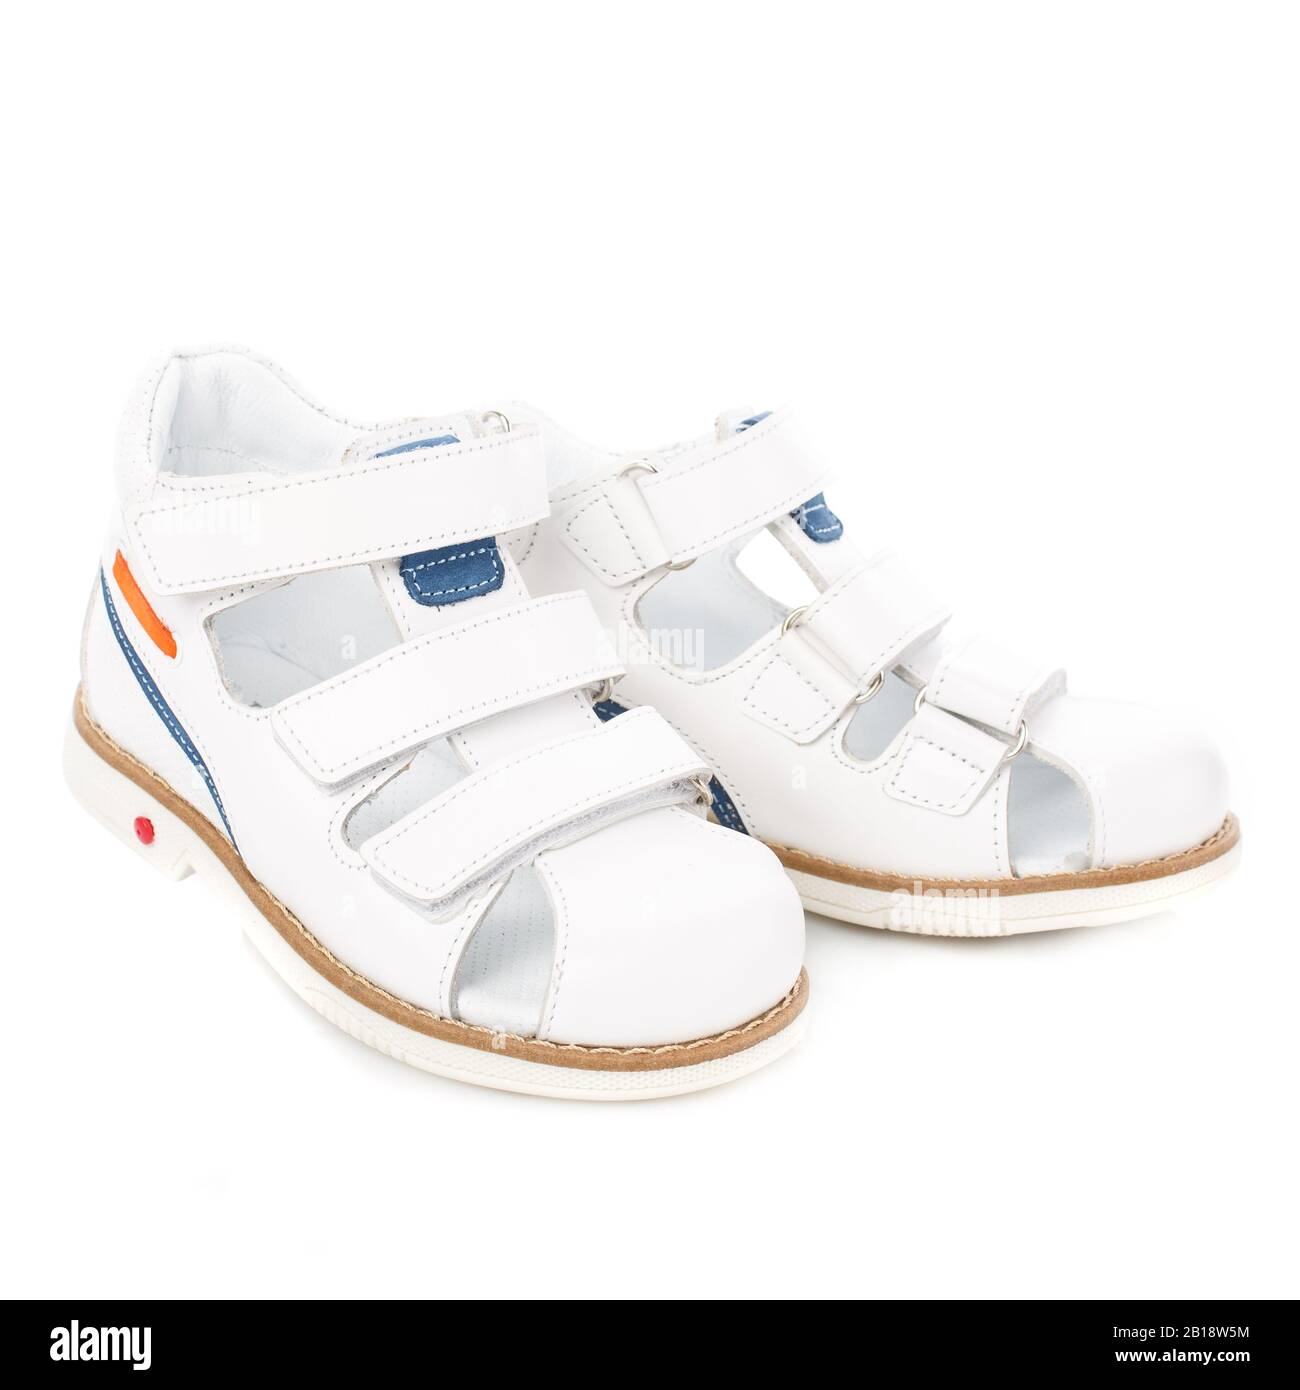 childrens white sandals